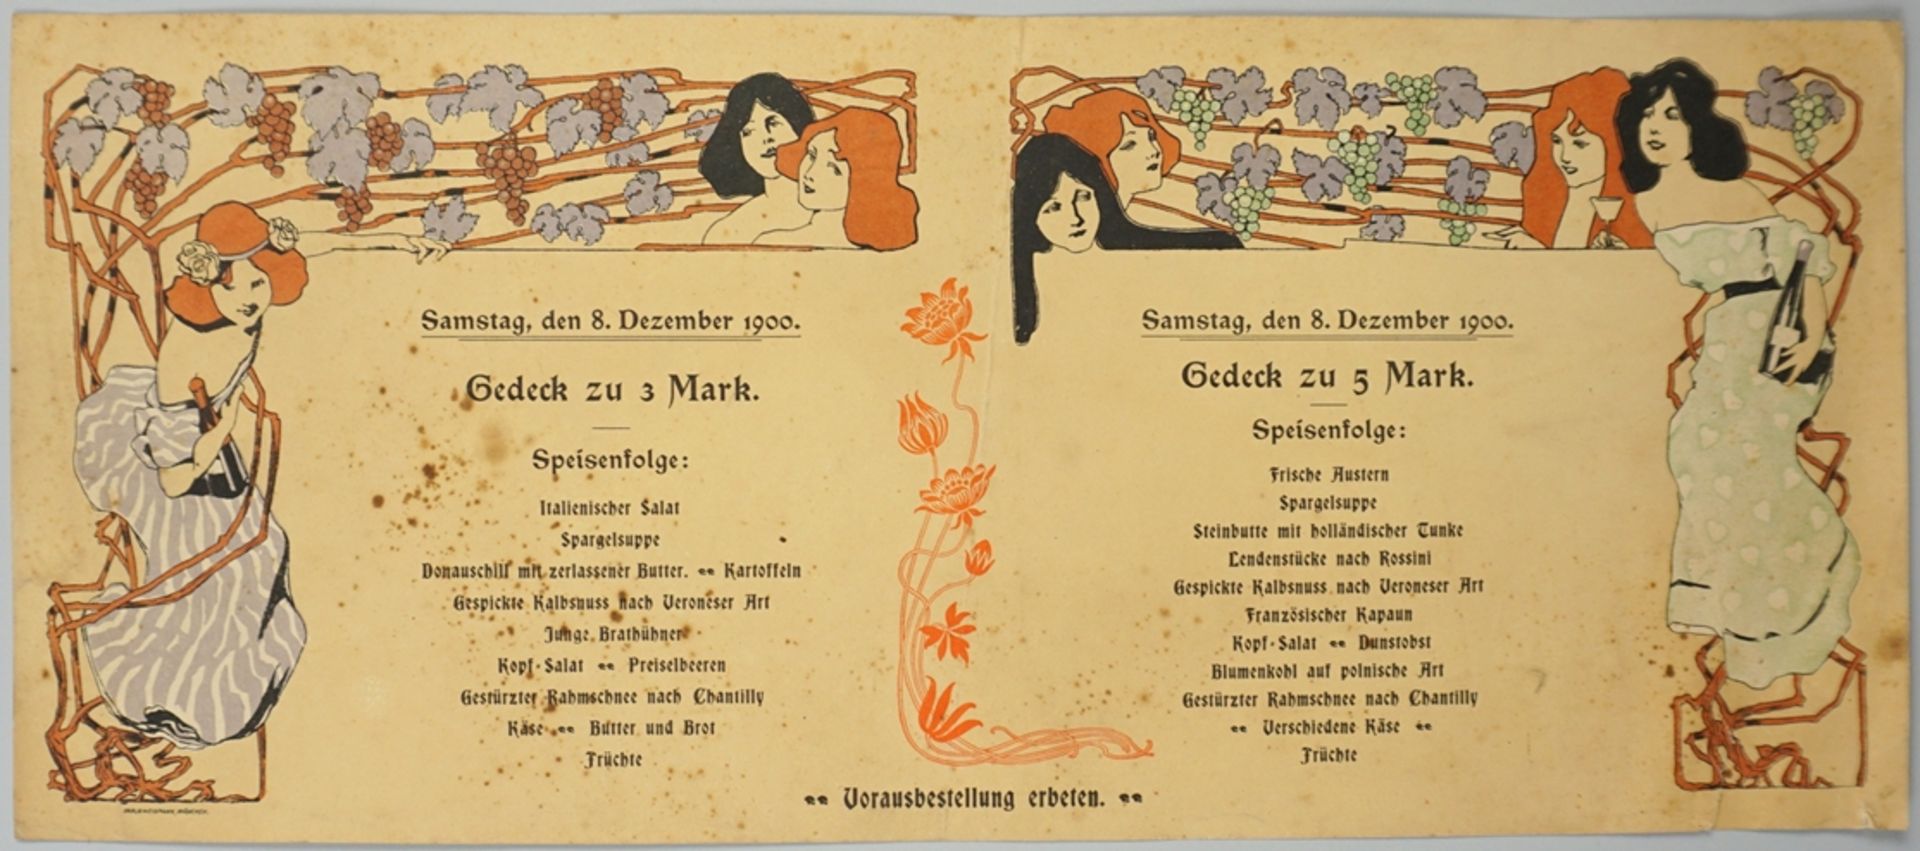 Speisekarte für den 8.Dezember 1900, Druck Karl & Weidmann, München